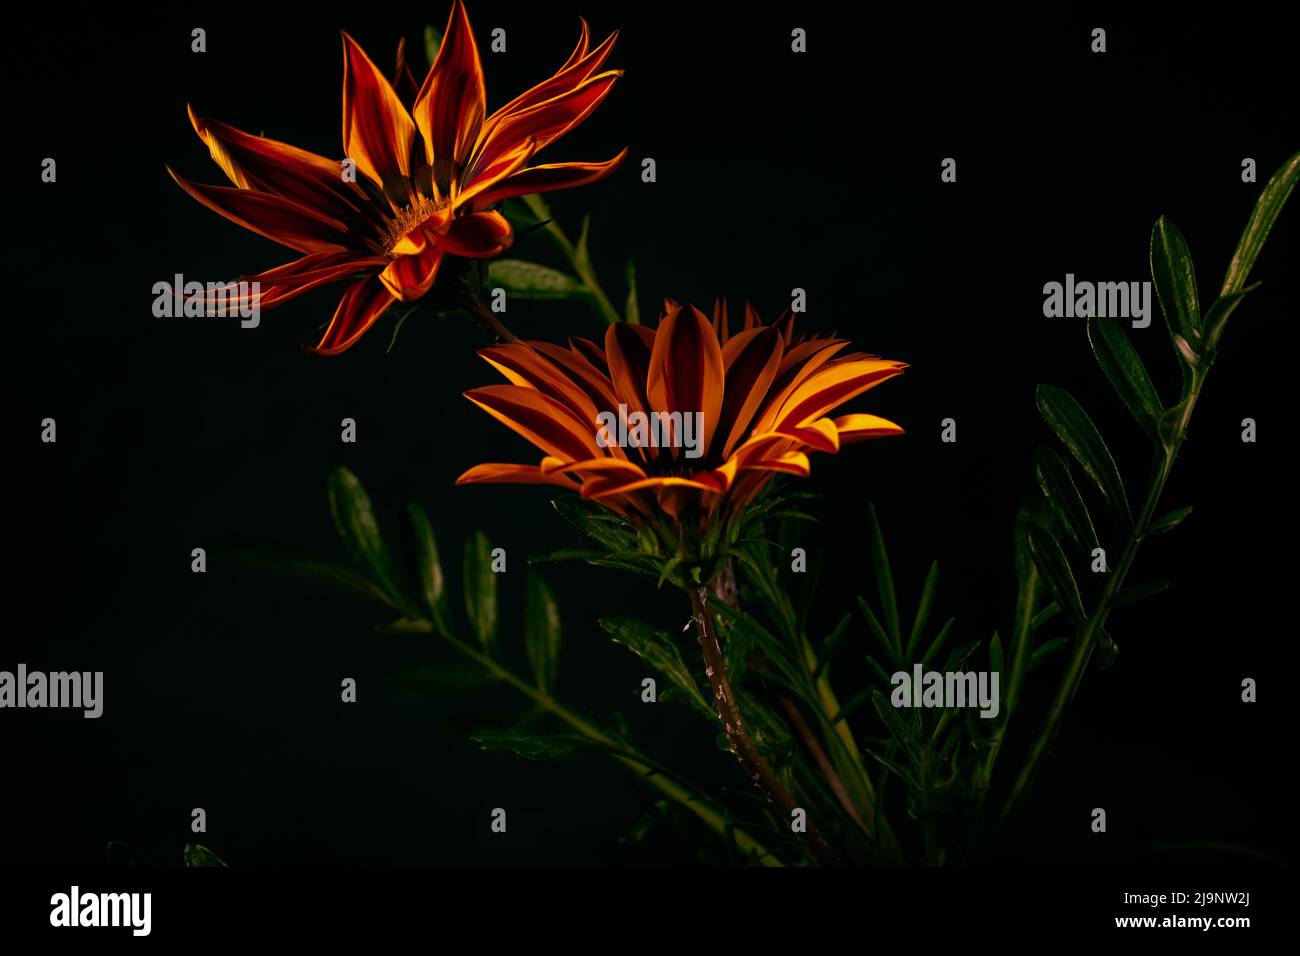 Photo of orange flowers Gazania Harsh with black background Stock Photo